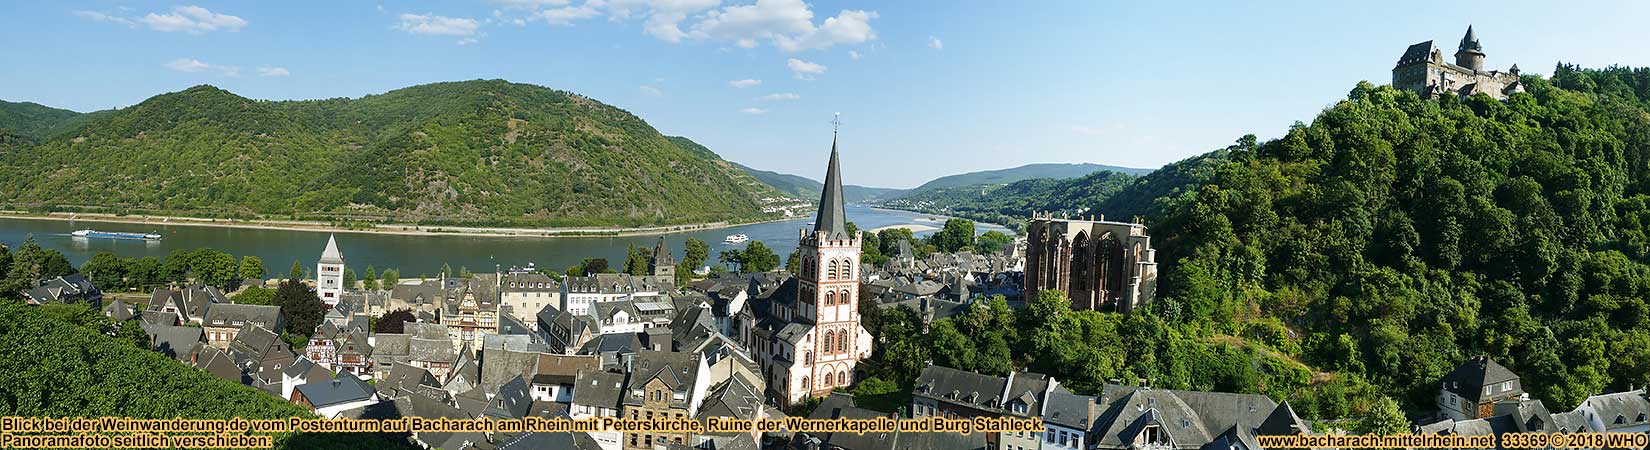 Blick vom Postenturm auf Bacharach am Rhein